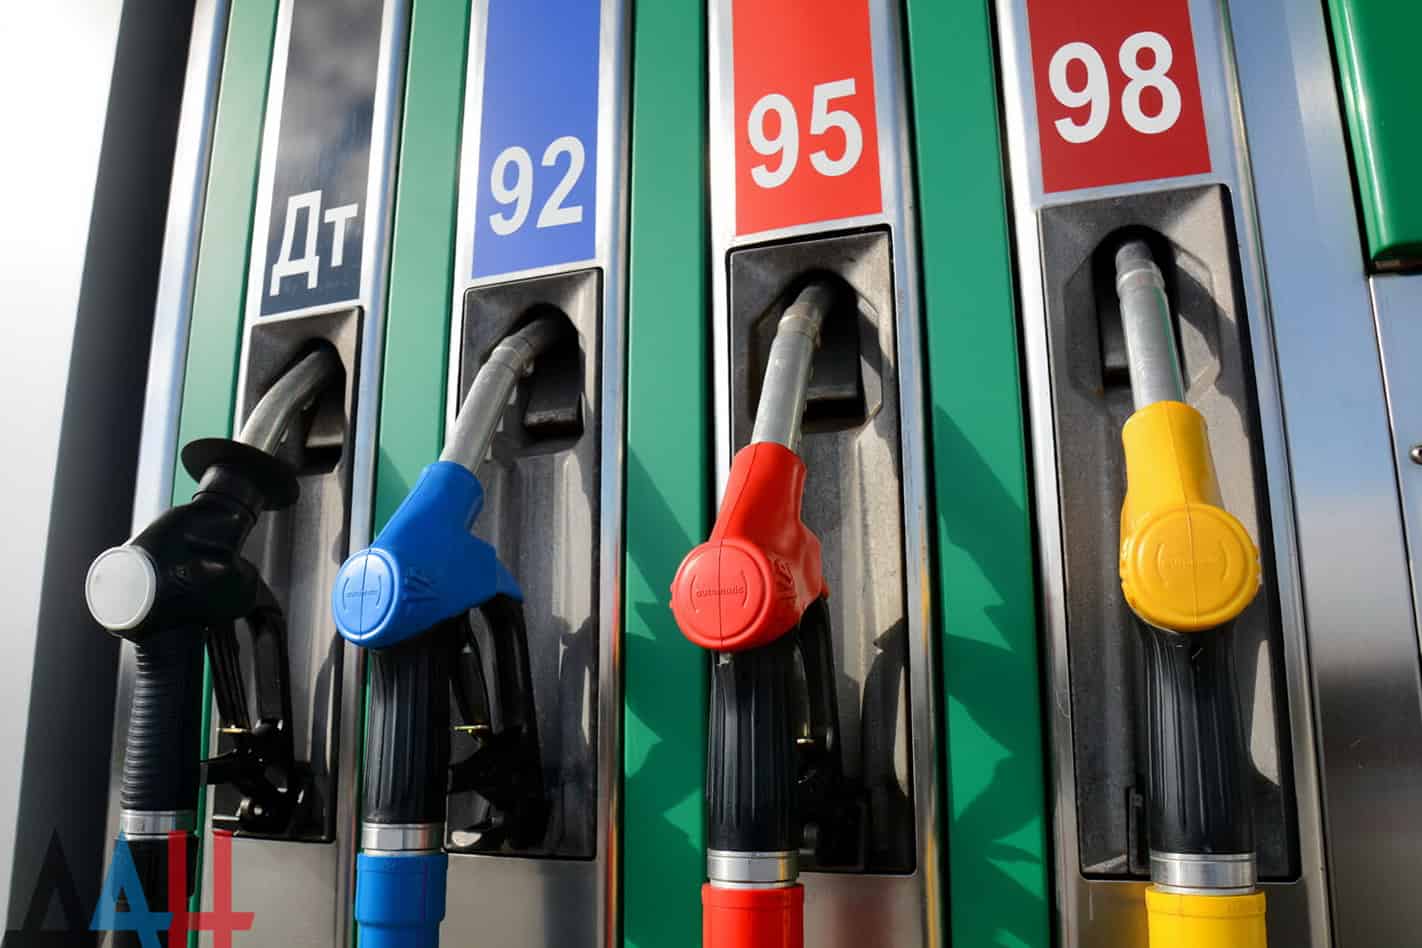 Кыргызстан потерял за год 16 позиций в мировом рейтинге дешевого бензина